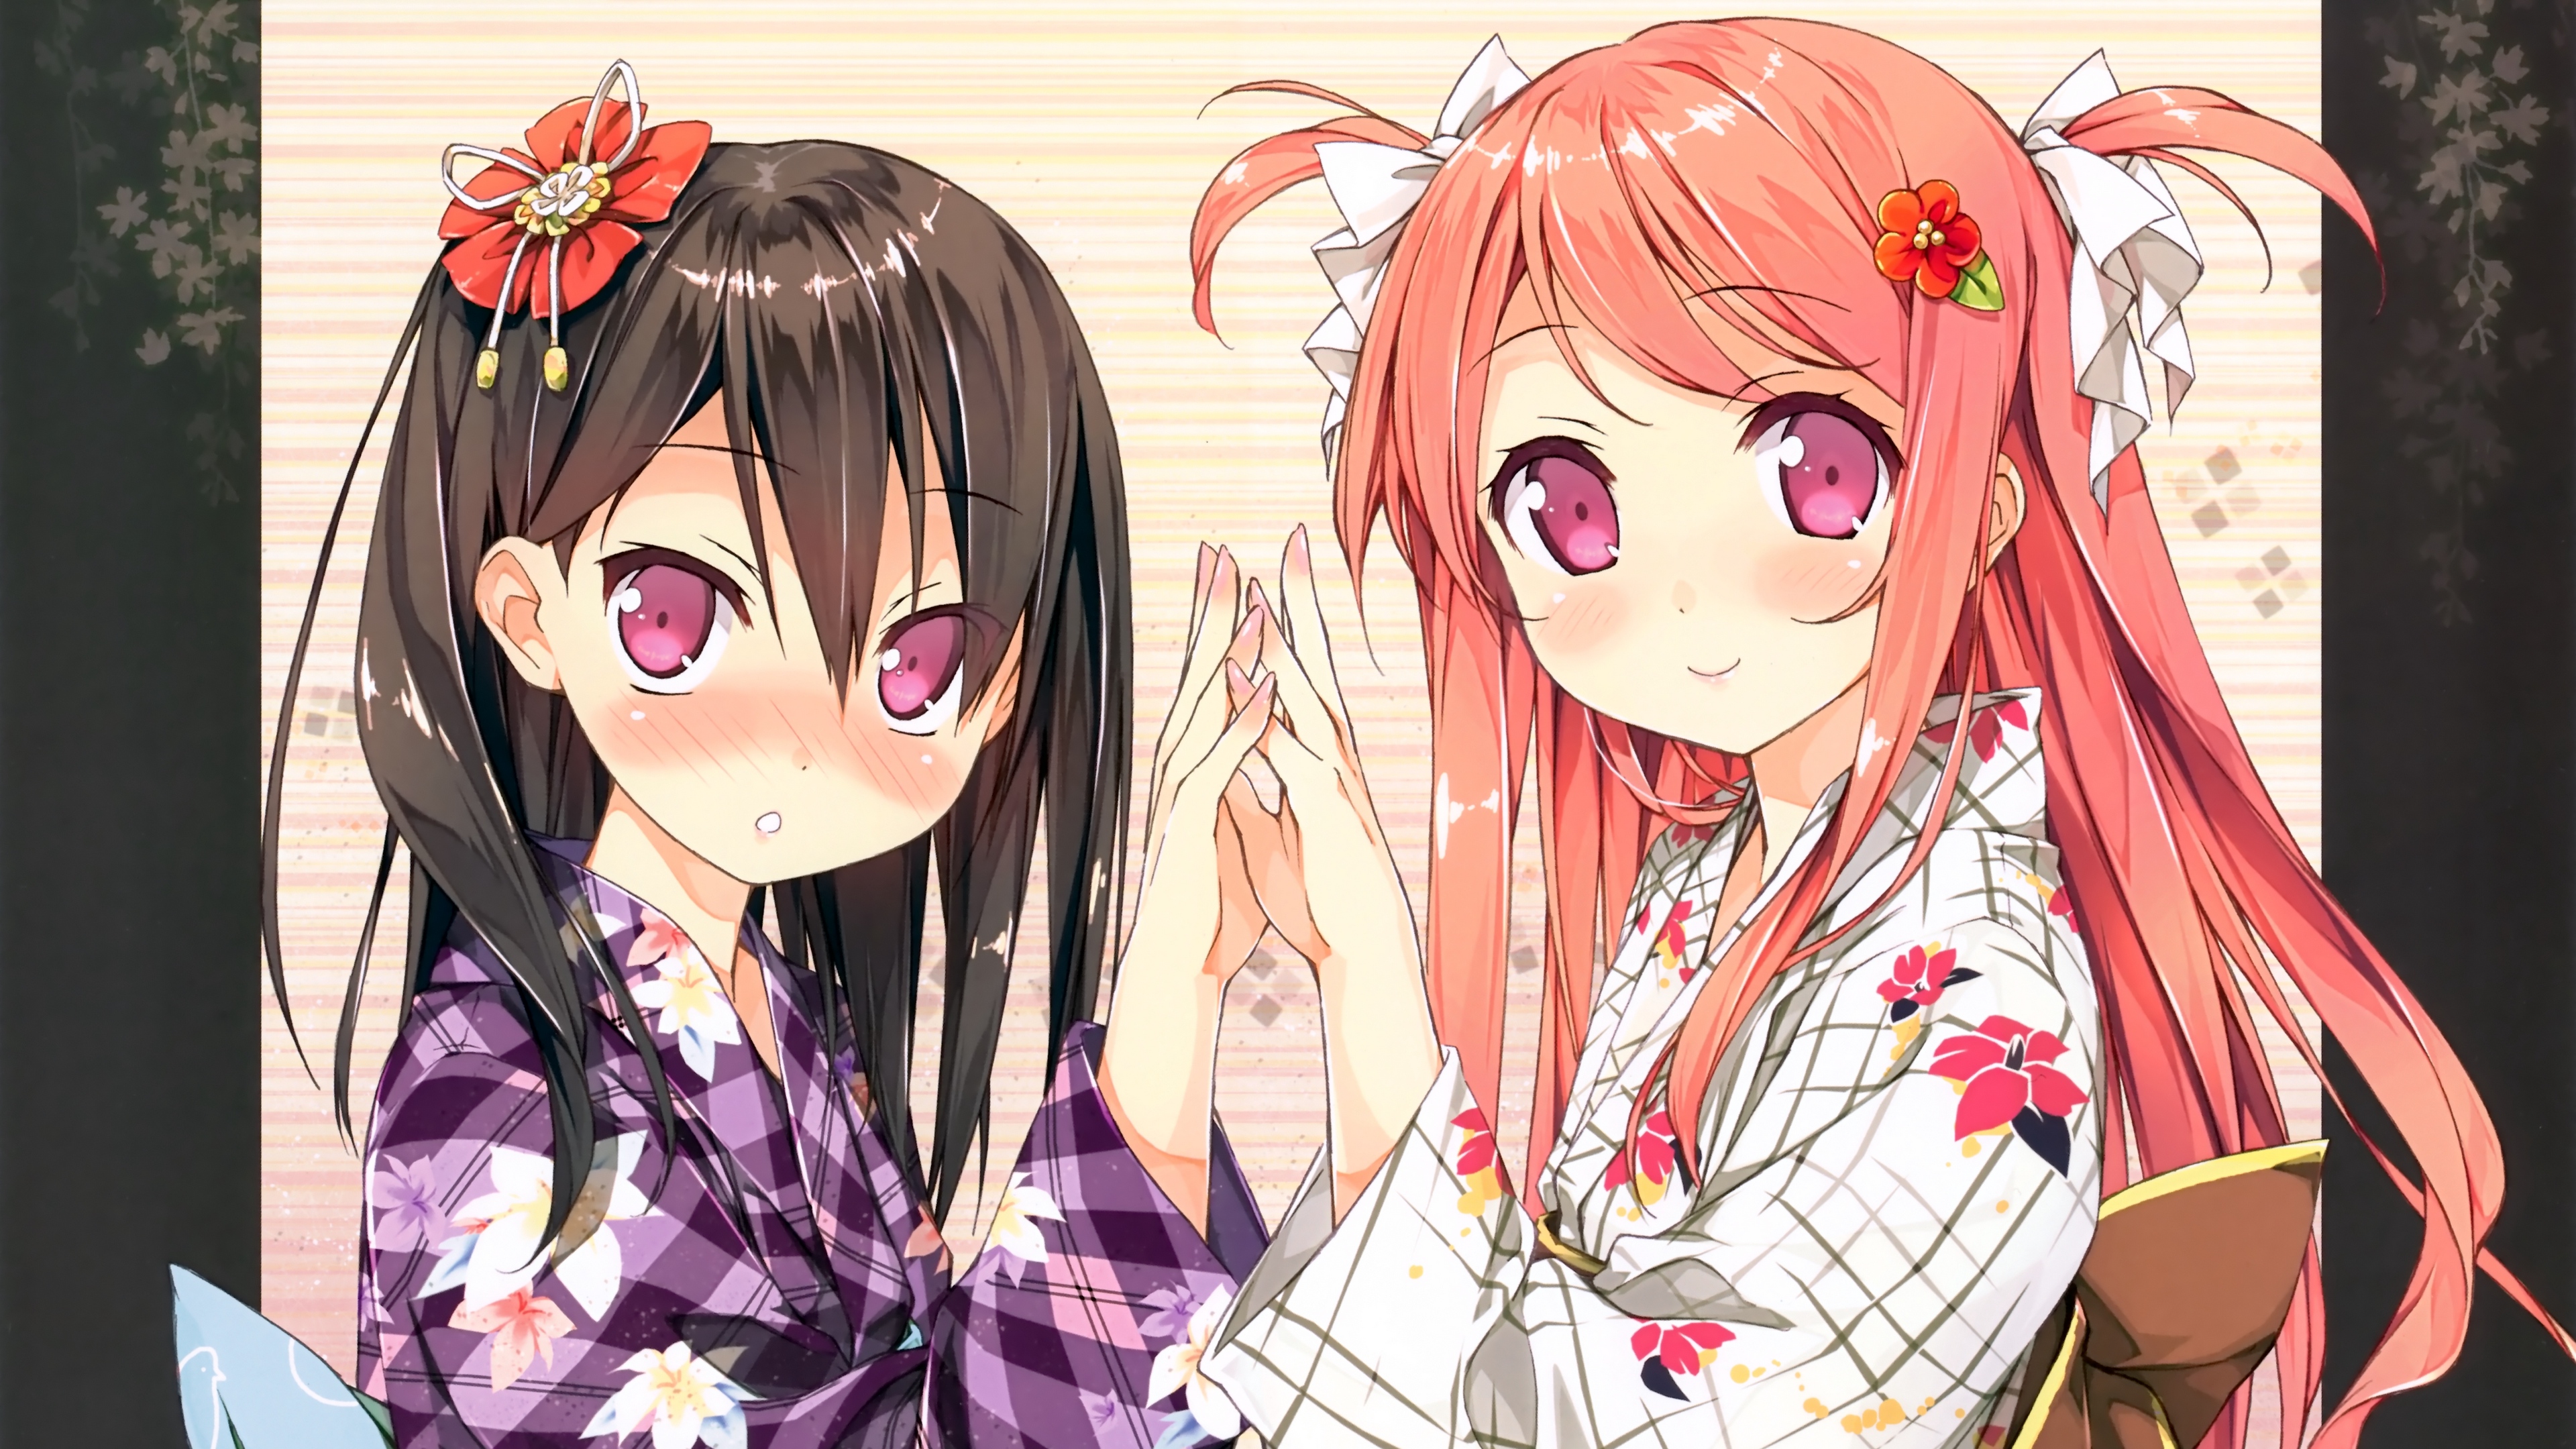 girl cute touching bow kimono 4k 1541975666 - girl, cute, touching, bow, kimono 4k - touching, Girl, Cute